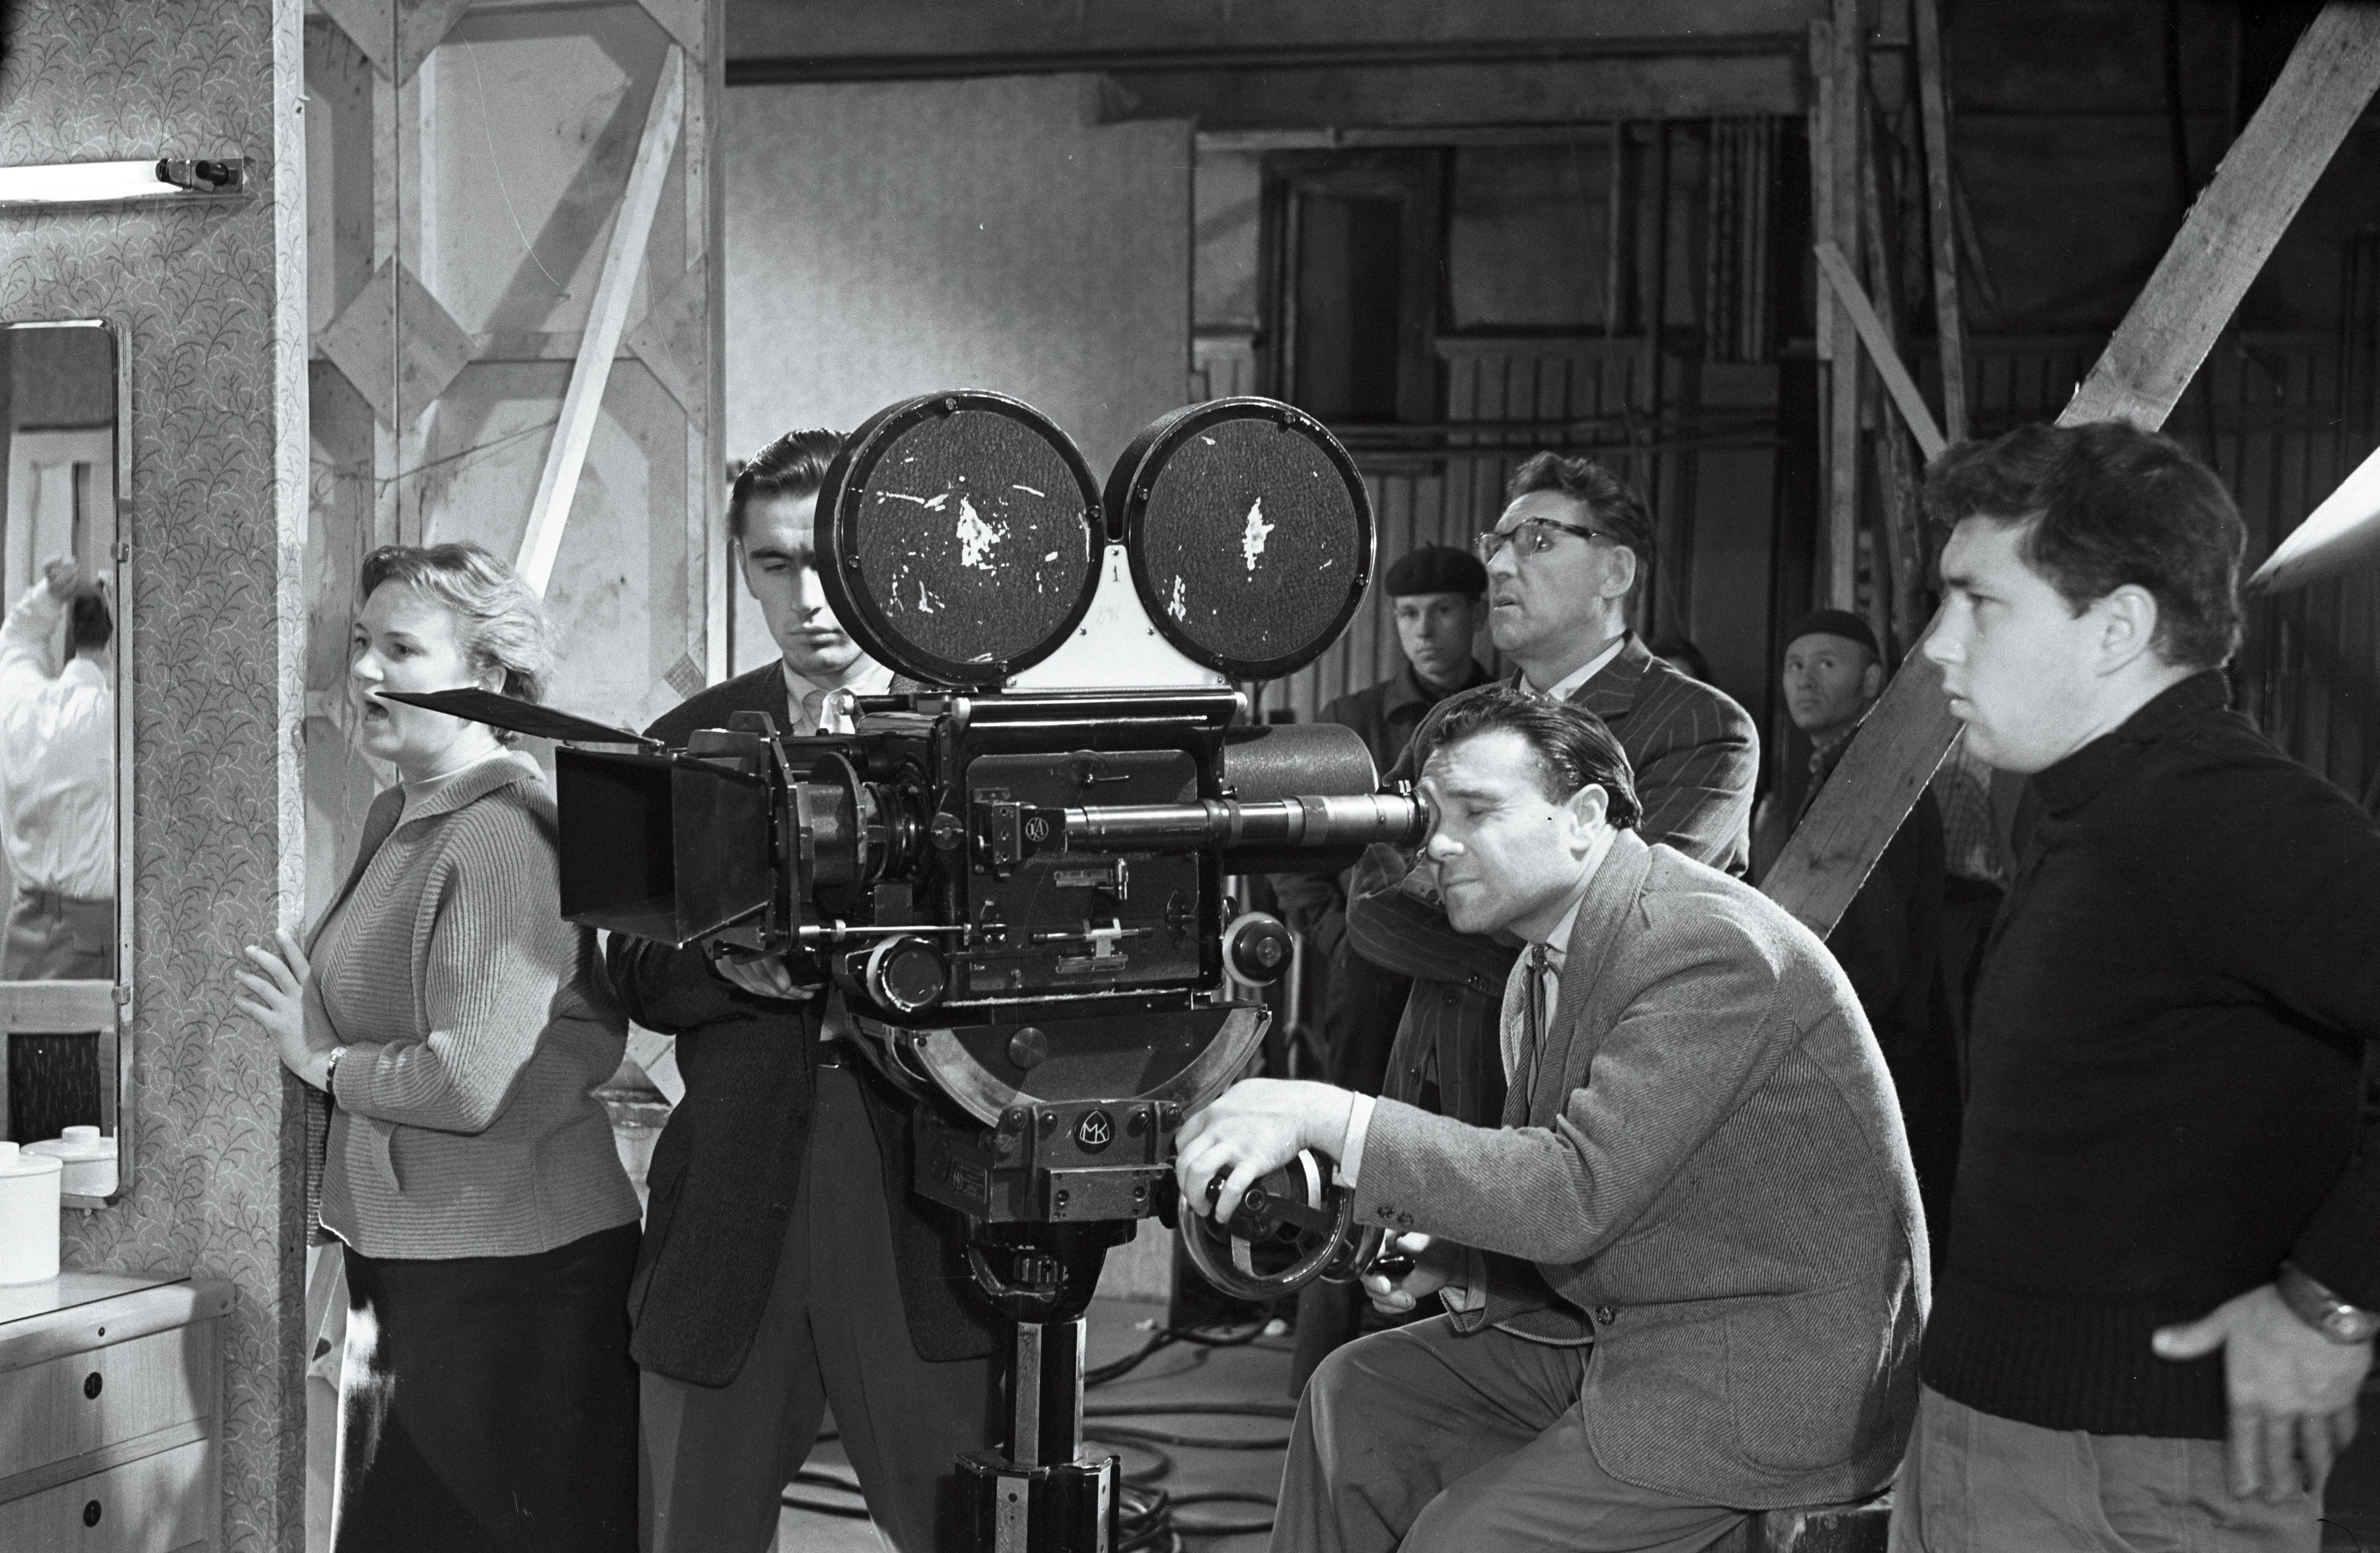 EFA 1-2672. Mängufilmi "Juhuslik kohtumine" võtetel, kaamera taga operaator Semjon Školnikov. Foto: autor teadmata, 1960 